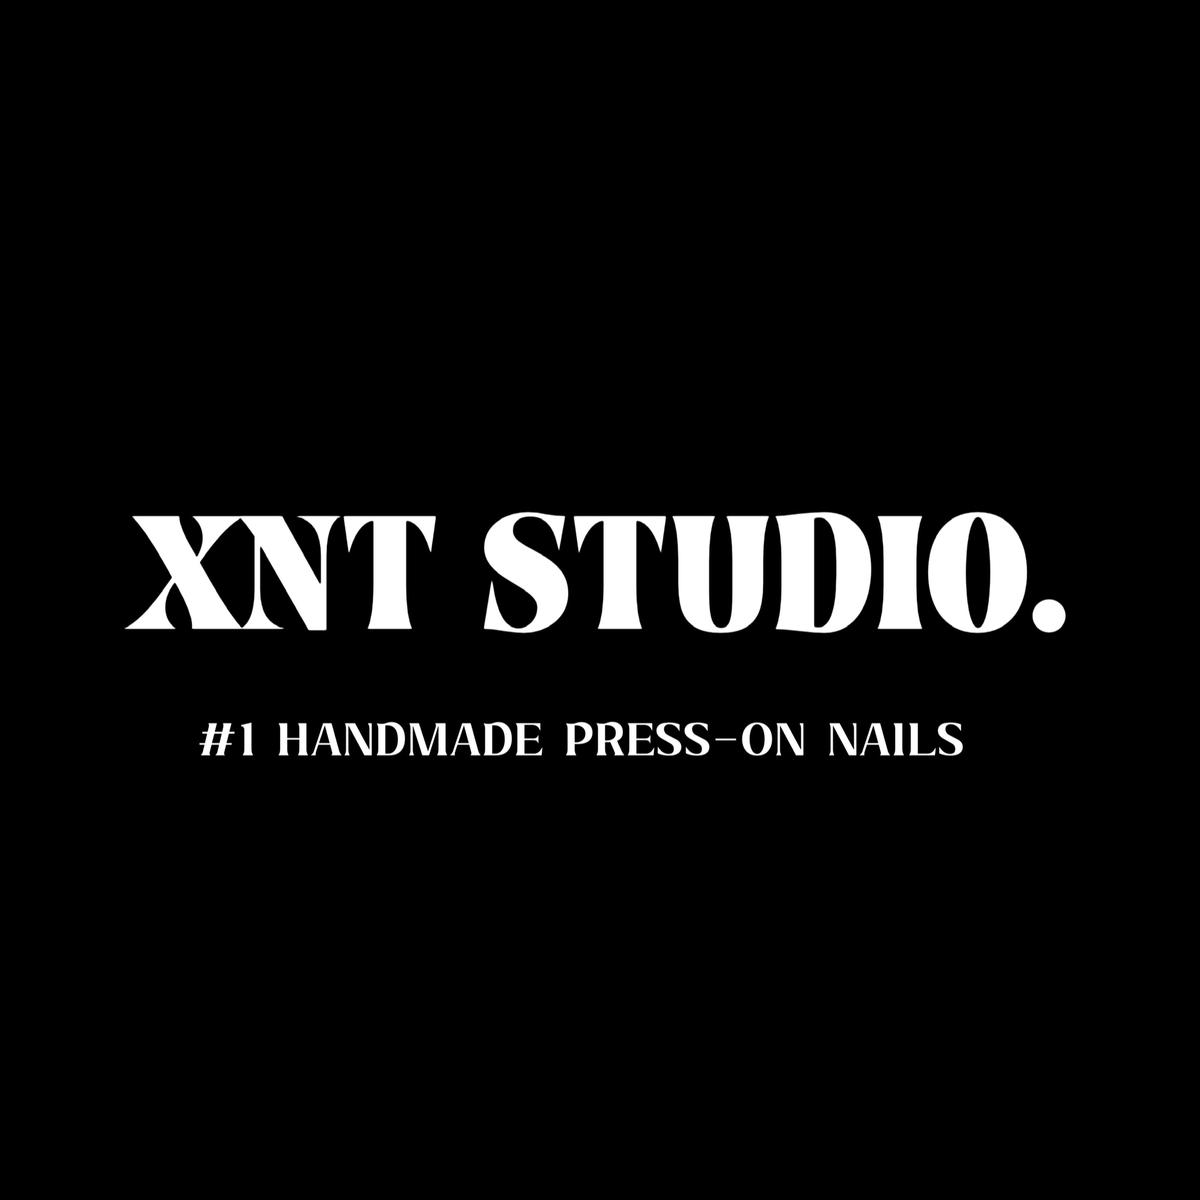 XntStudio's images